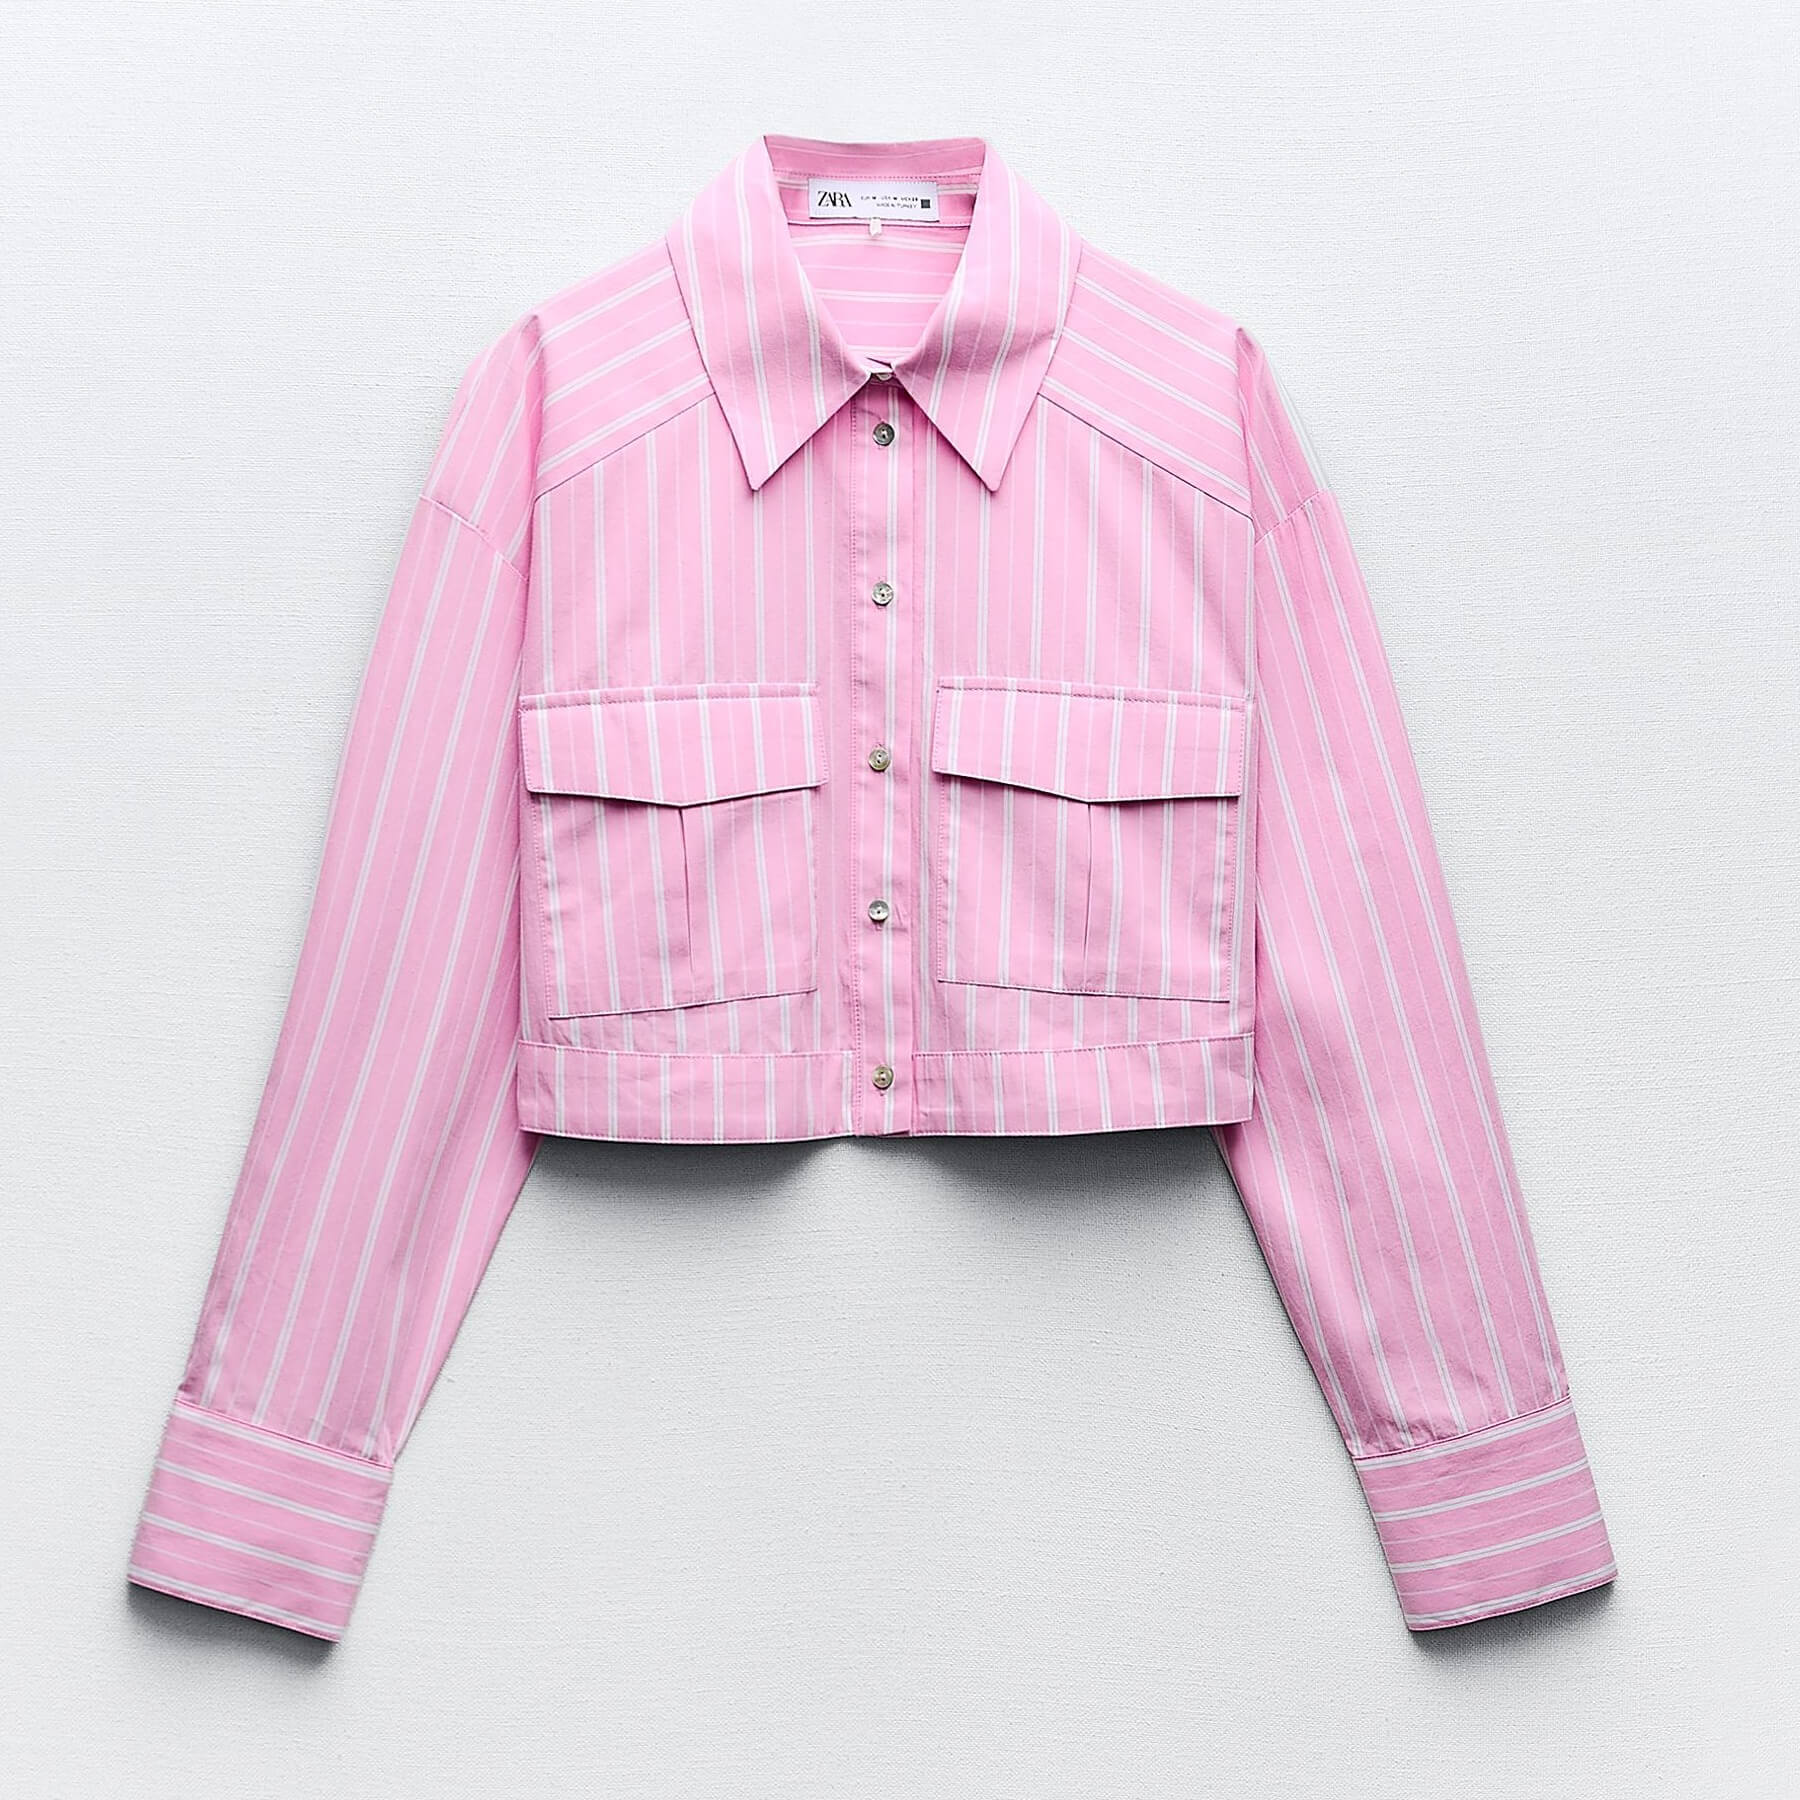 Рубашка Zara Cropped Striped, розовый/белый рубашка zara cropped striped голубой белый